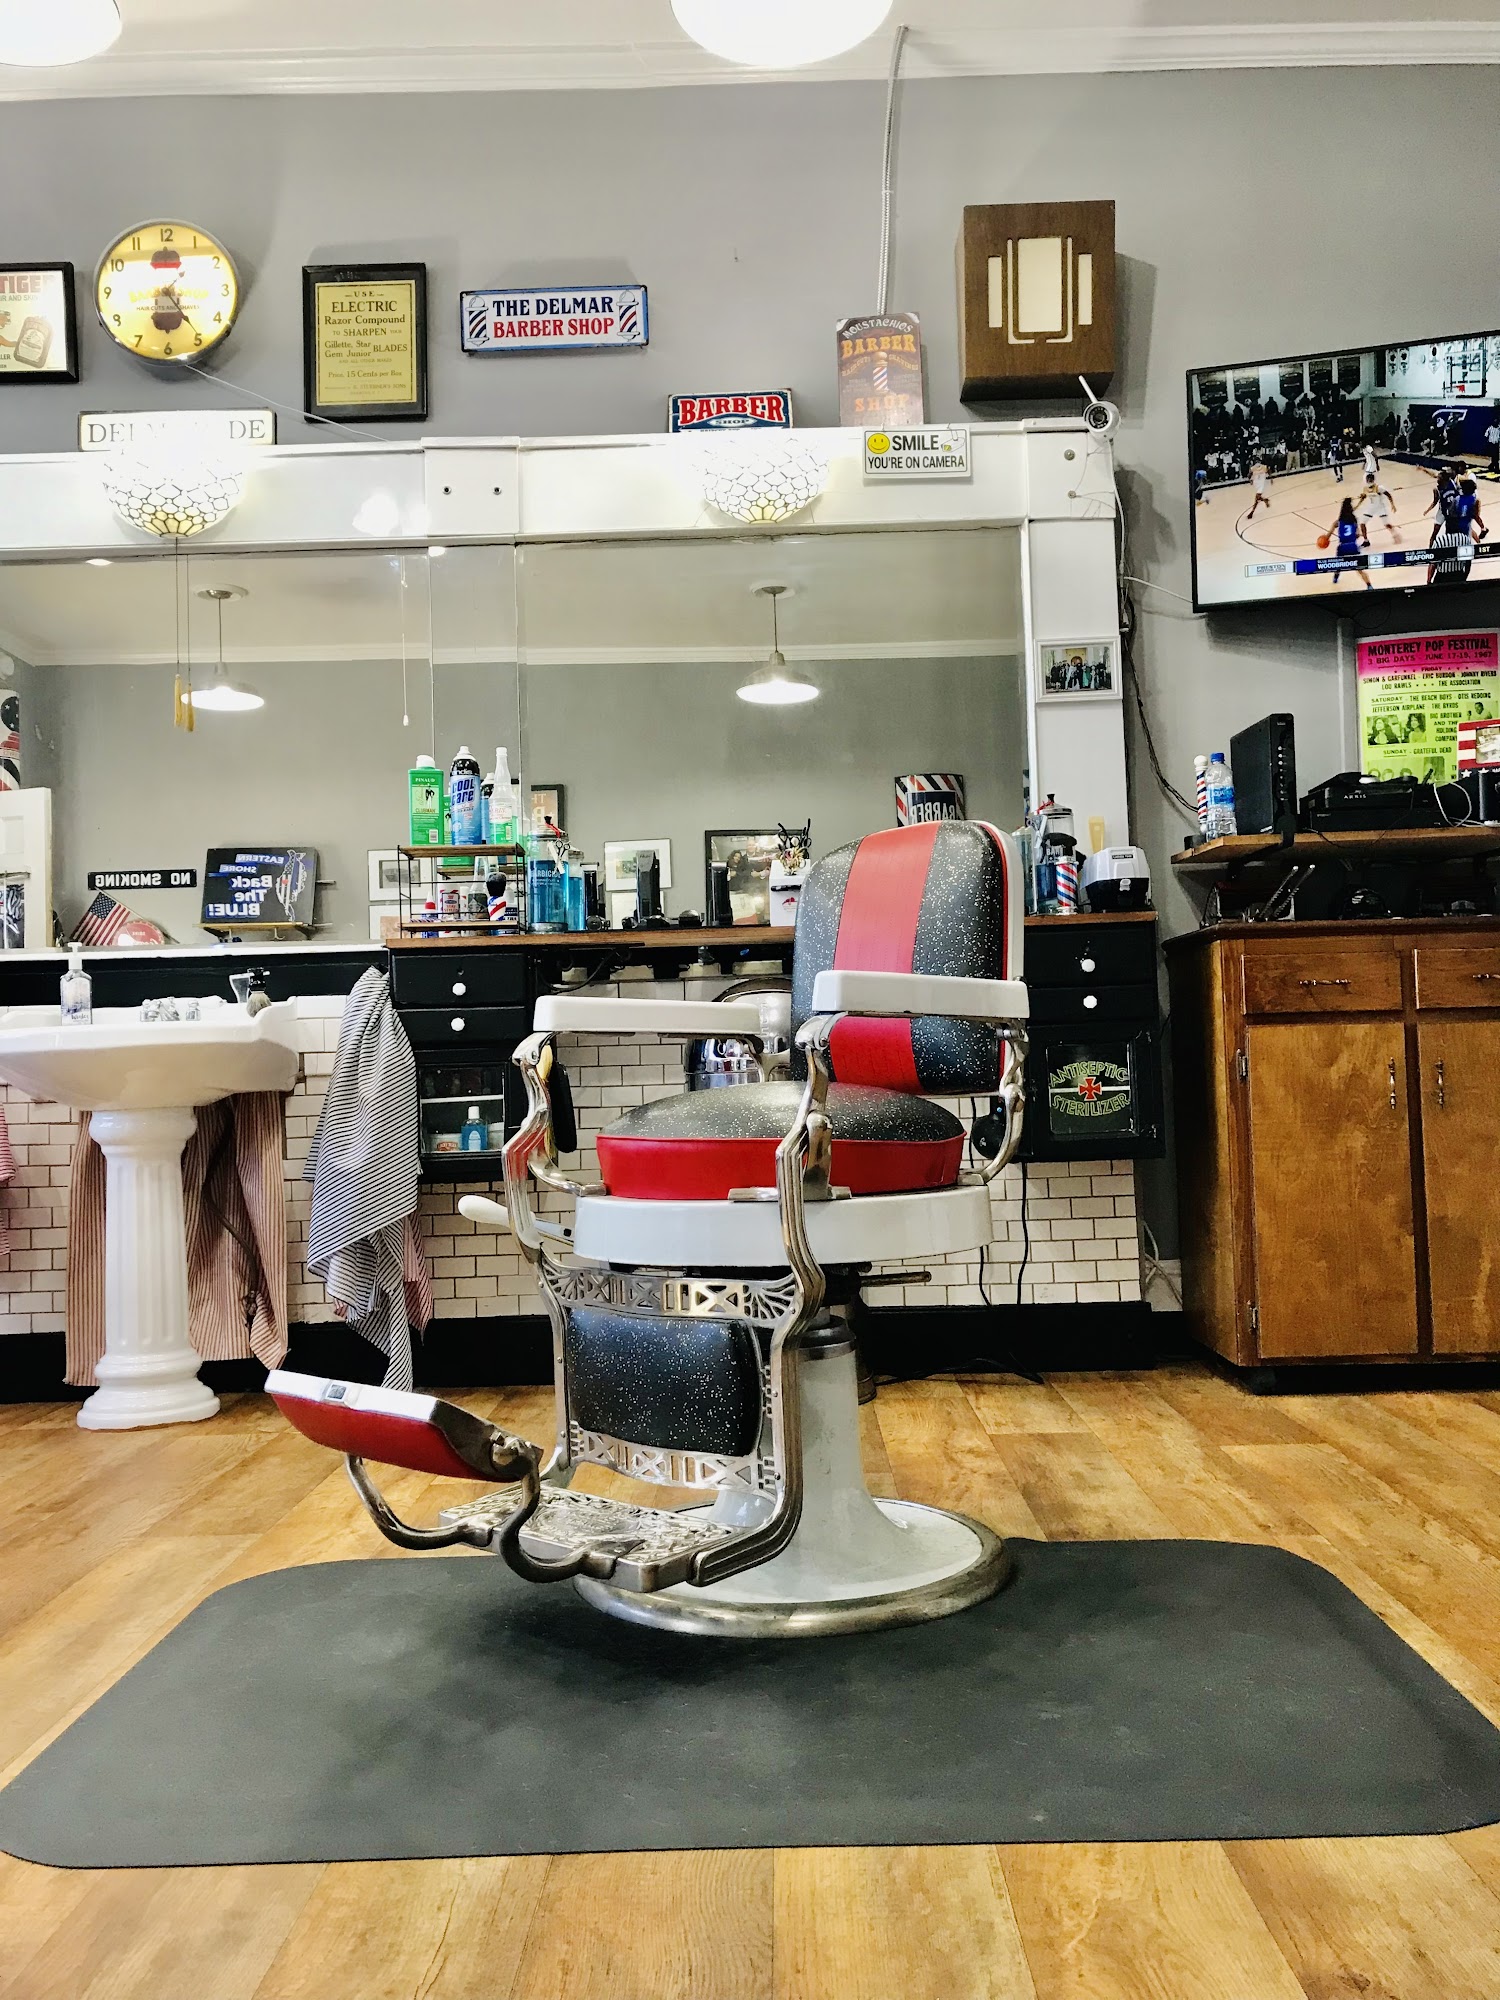 The Delmar Barber Shop 14 N Pennsylvania Ave, Delmar Delaware 19940